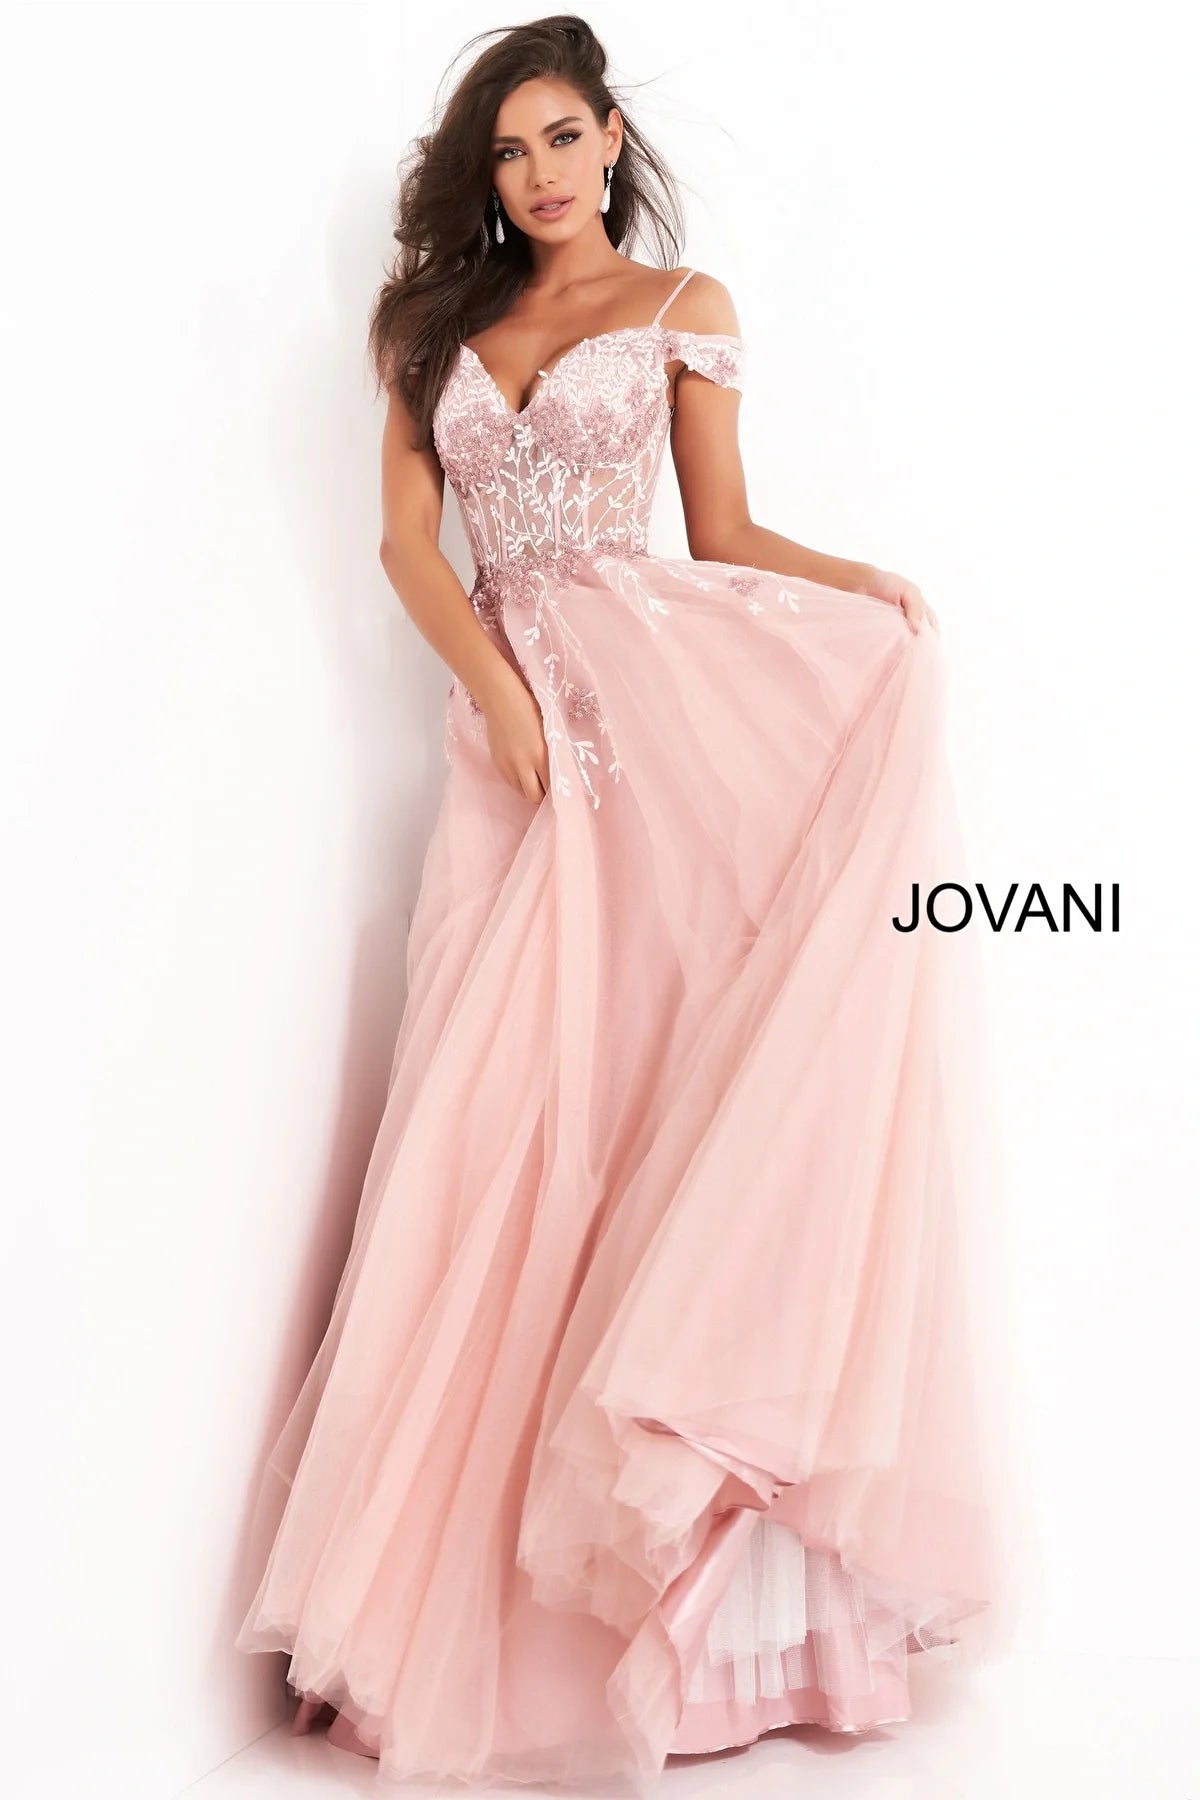 Jovani 02022 Off the Shoulder Embellished Evening Dress